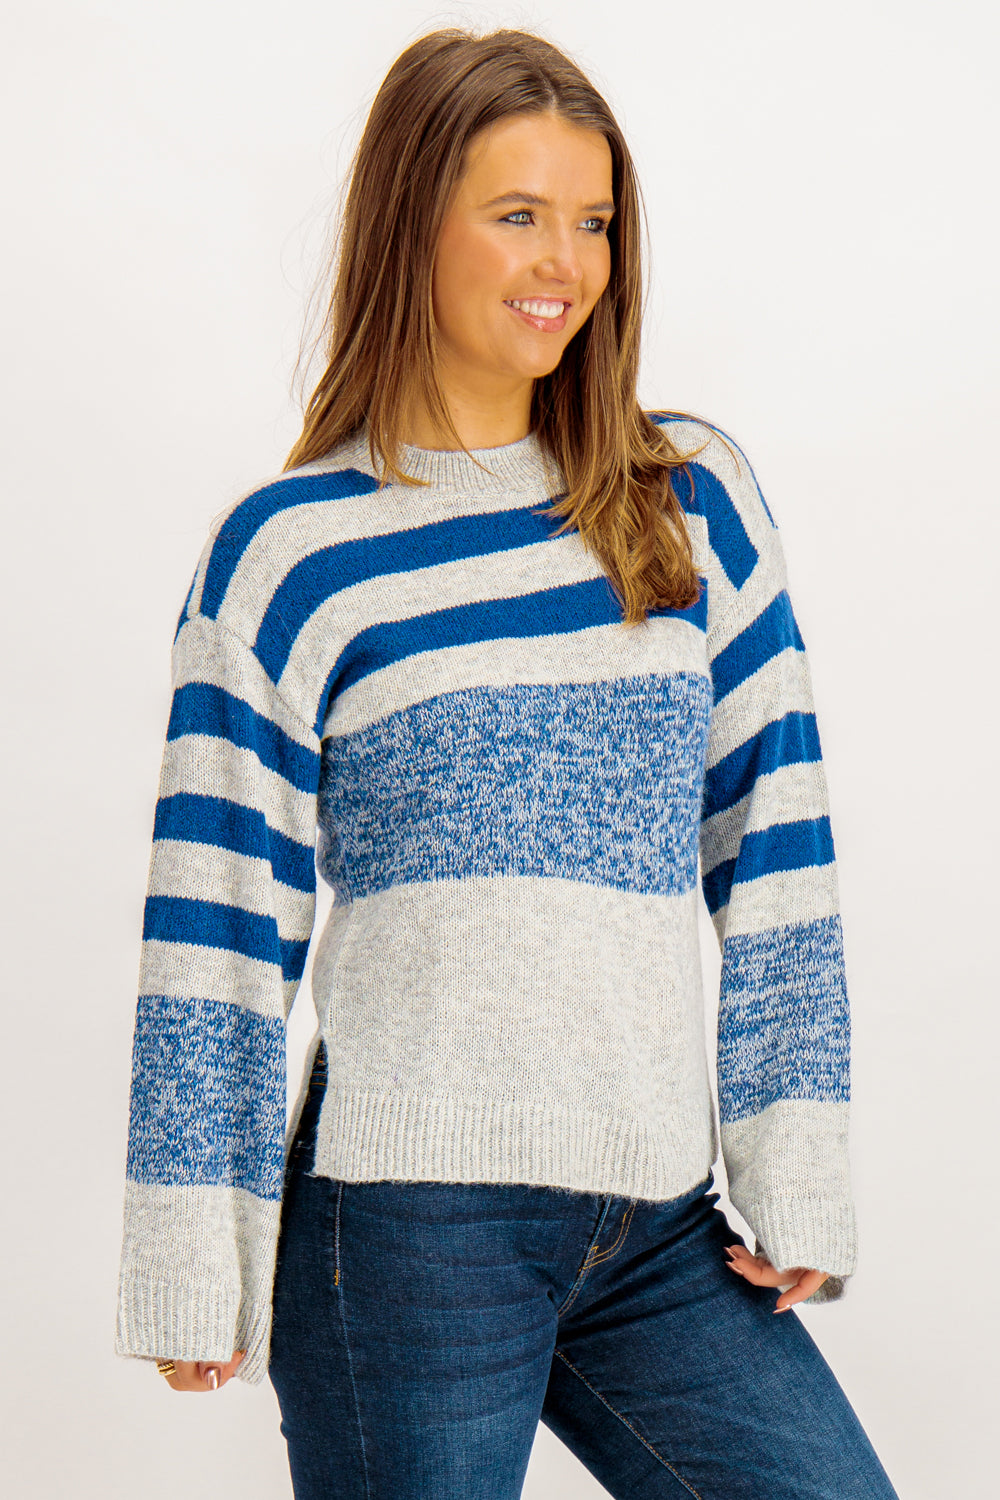 Polana Light Grey & Blue Striped Knit